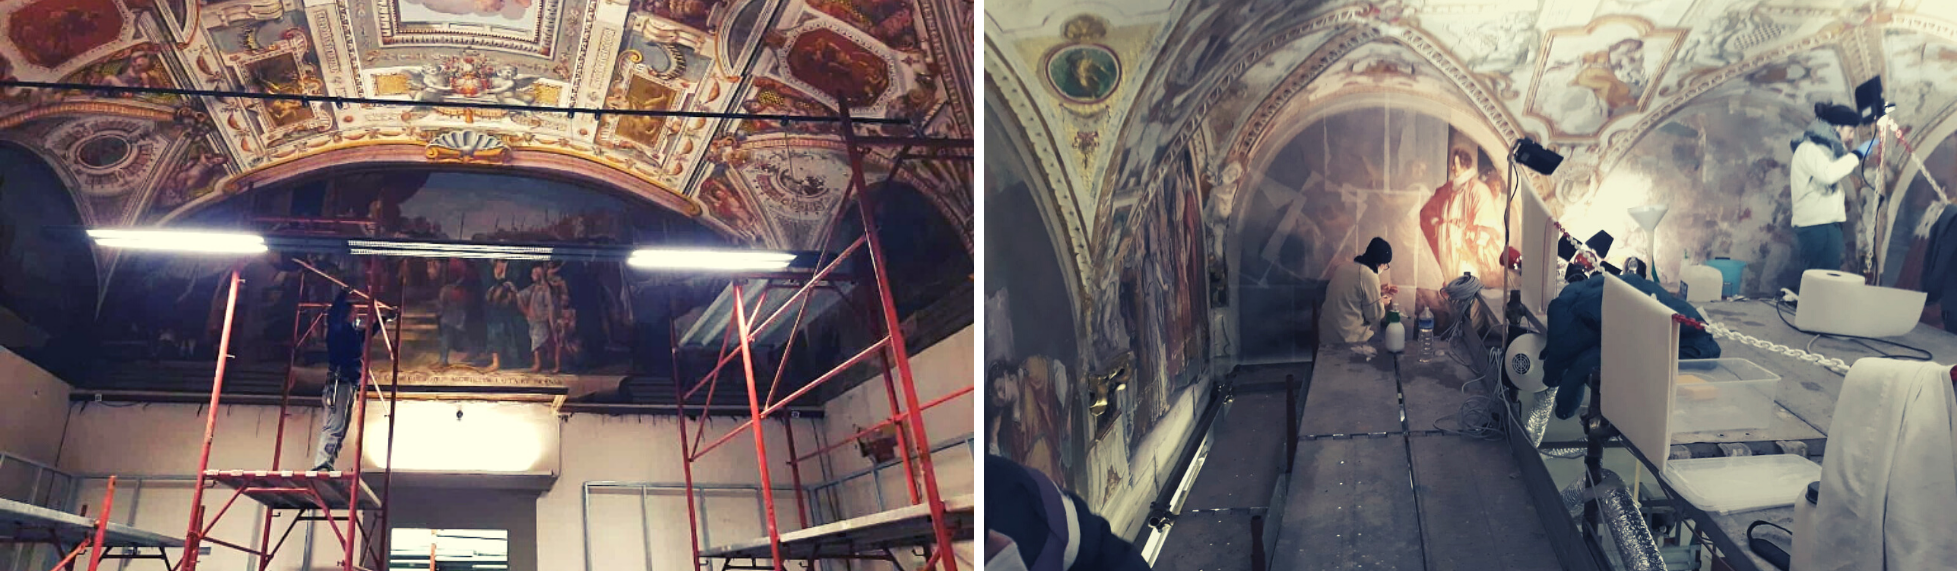 Palazzo Buontalenti_restauro affreschi